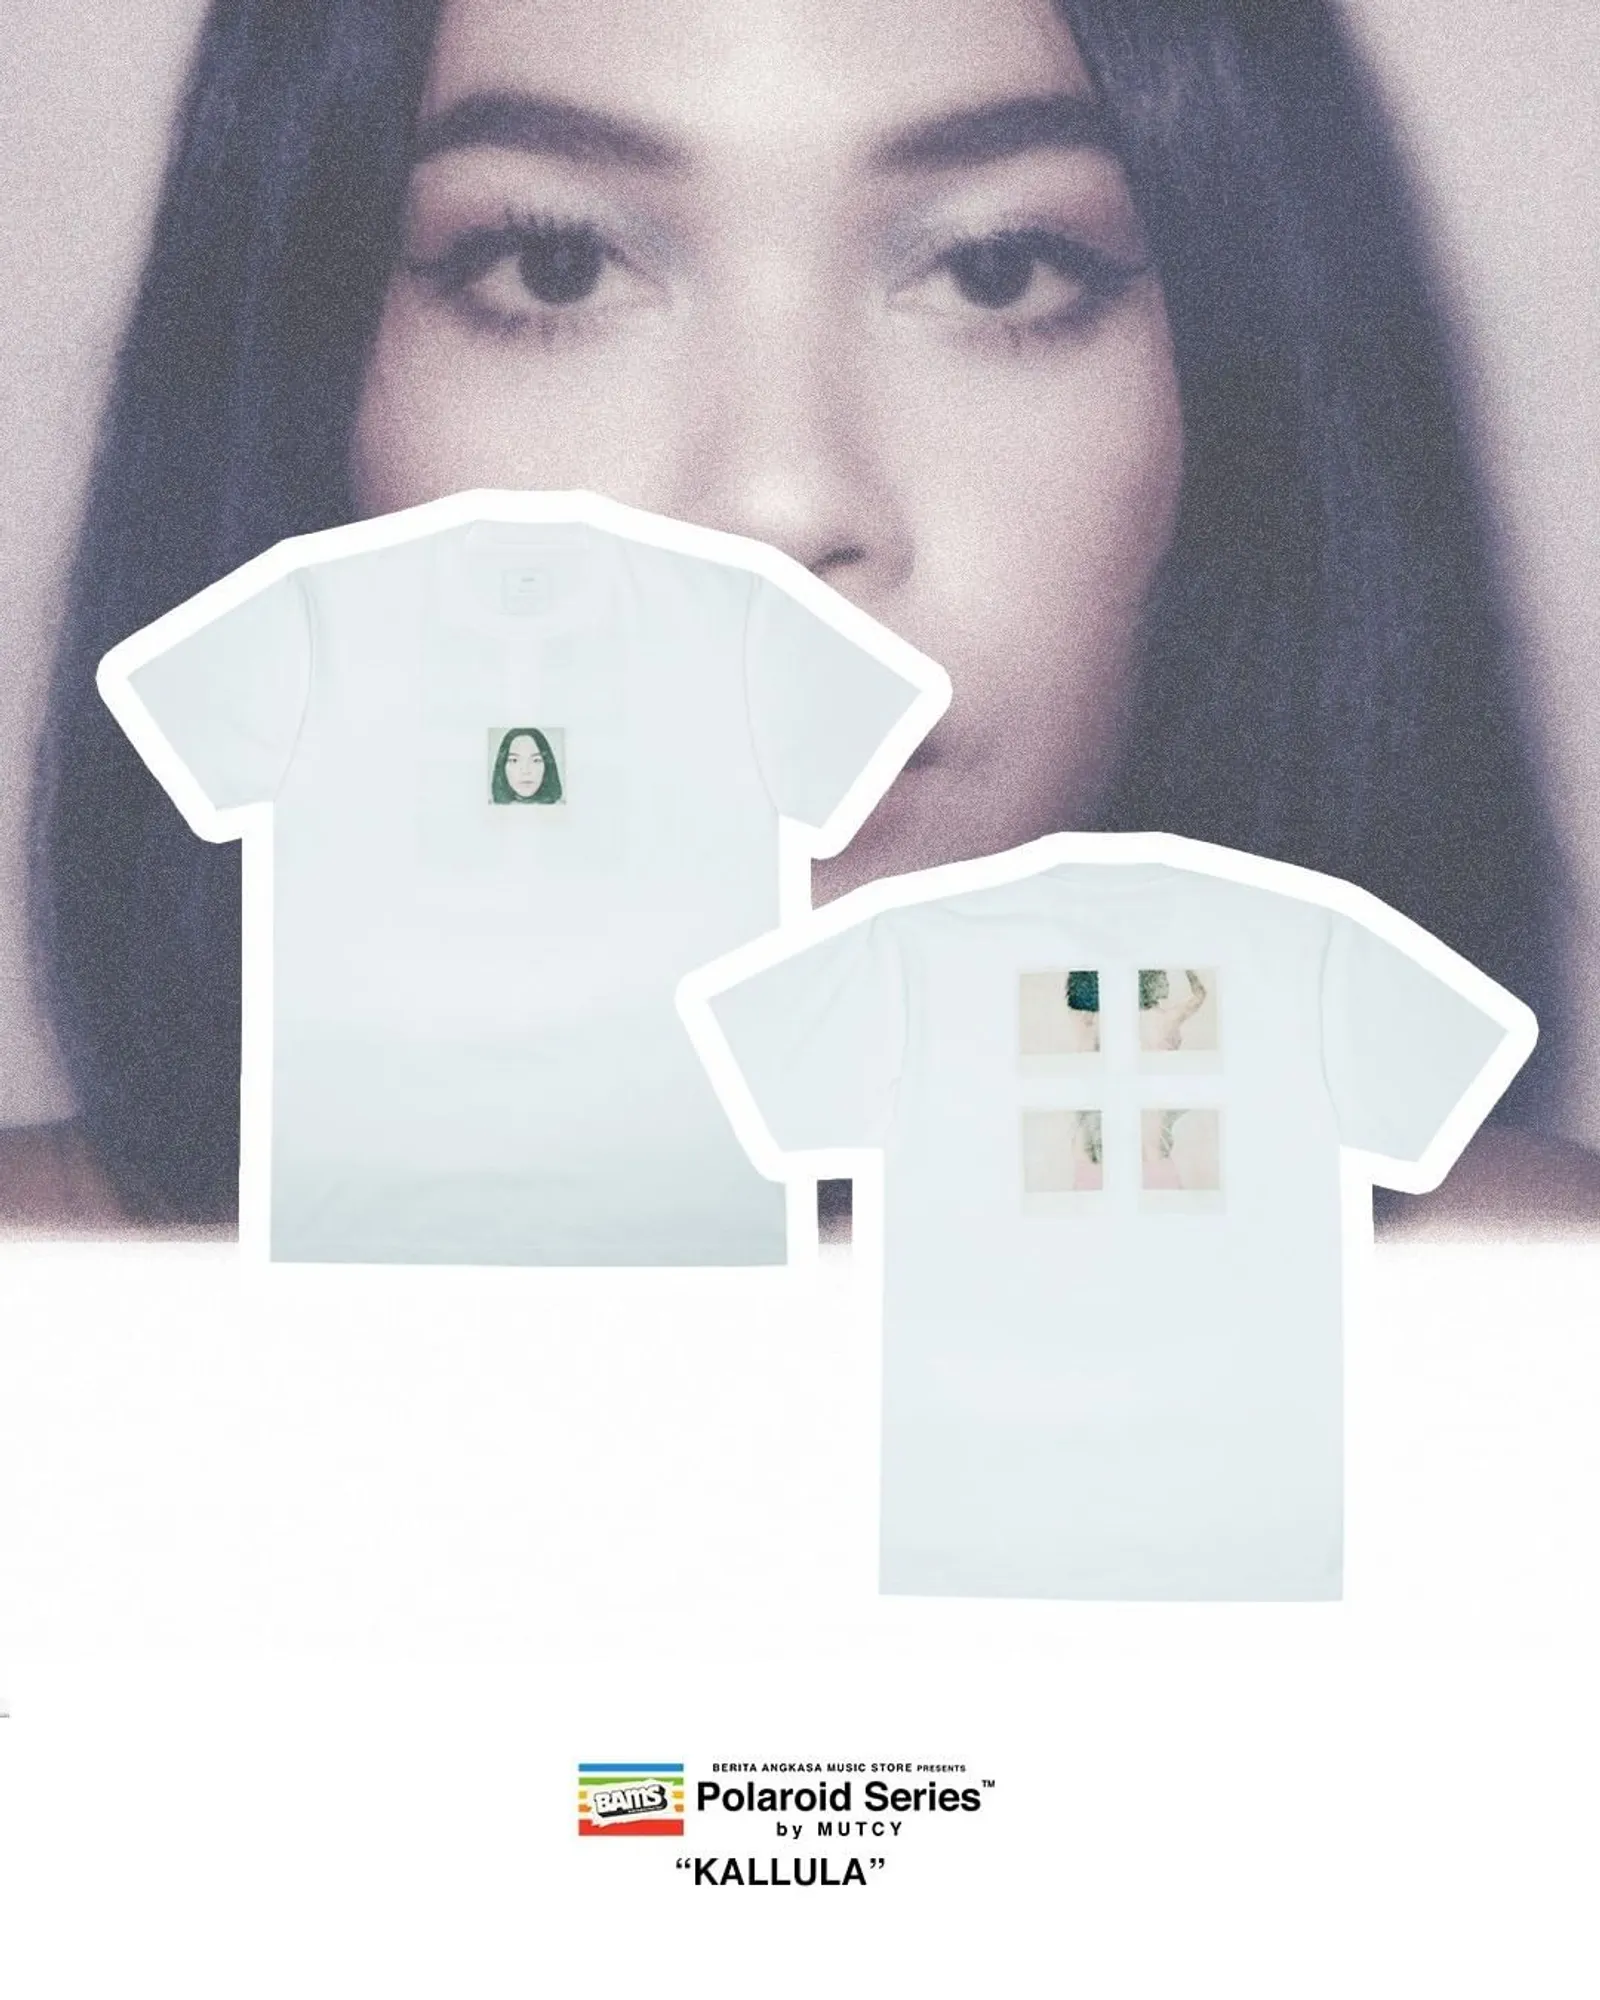 Berita Angkasa Music Store Rilis T-Shirt Eksklusif dengan Para Musisi